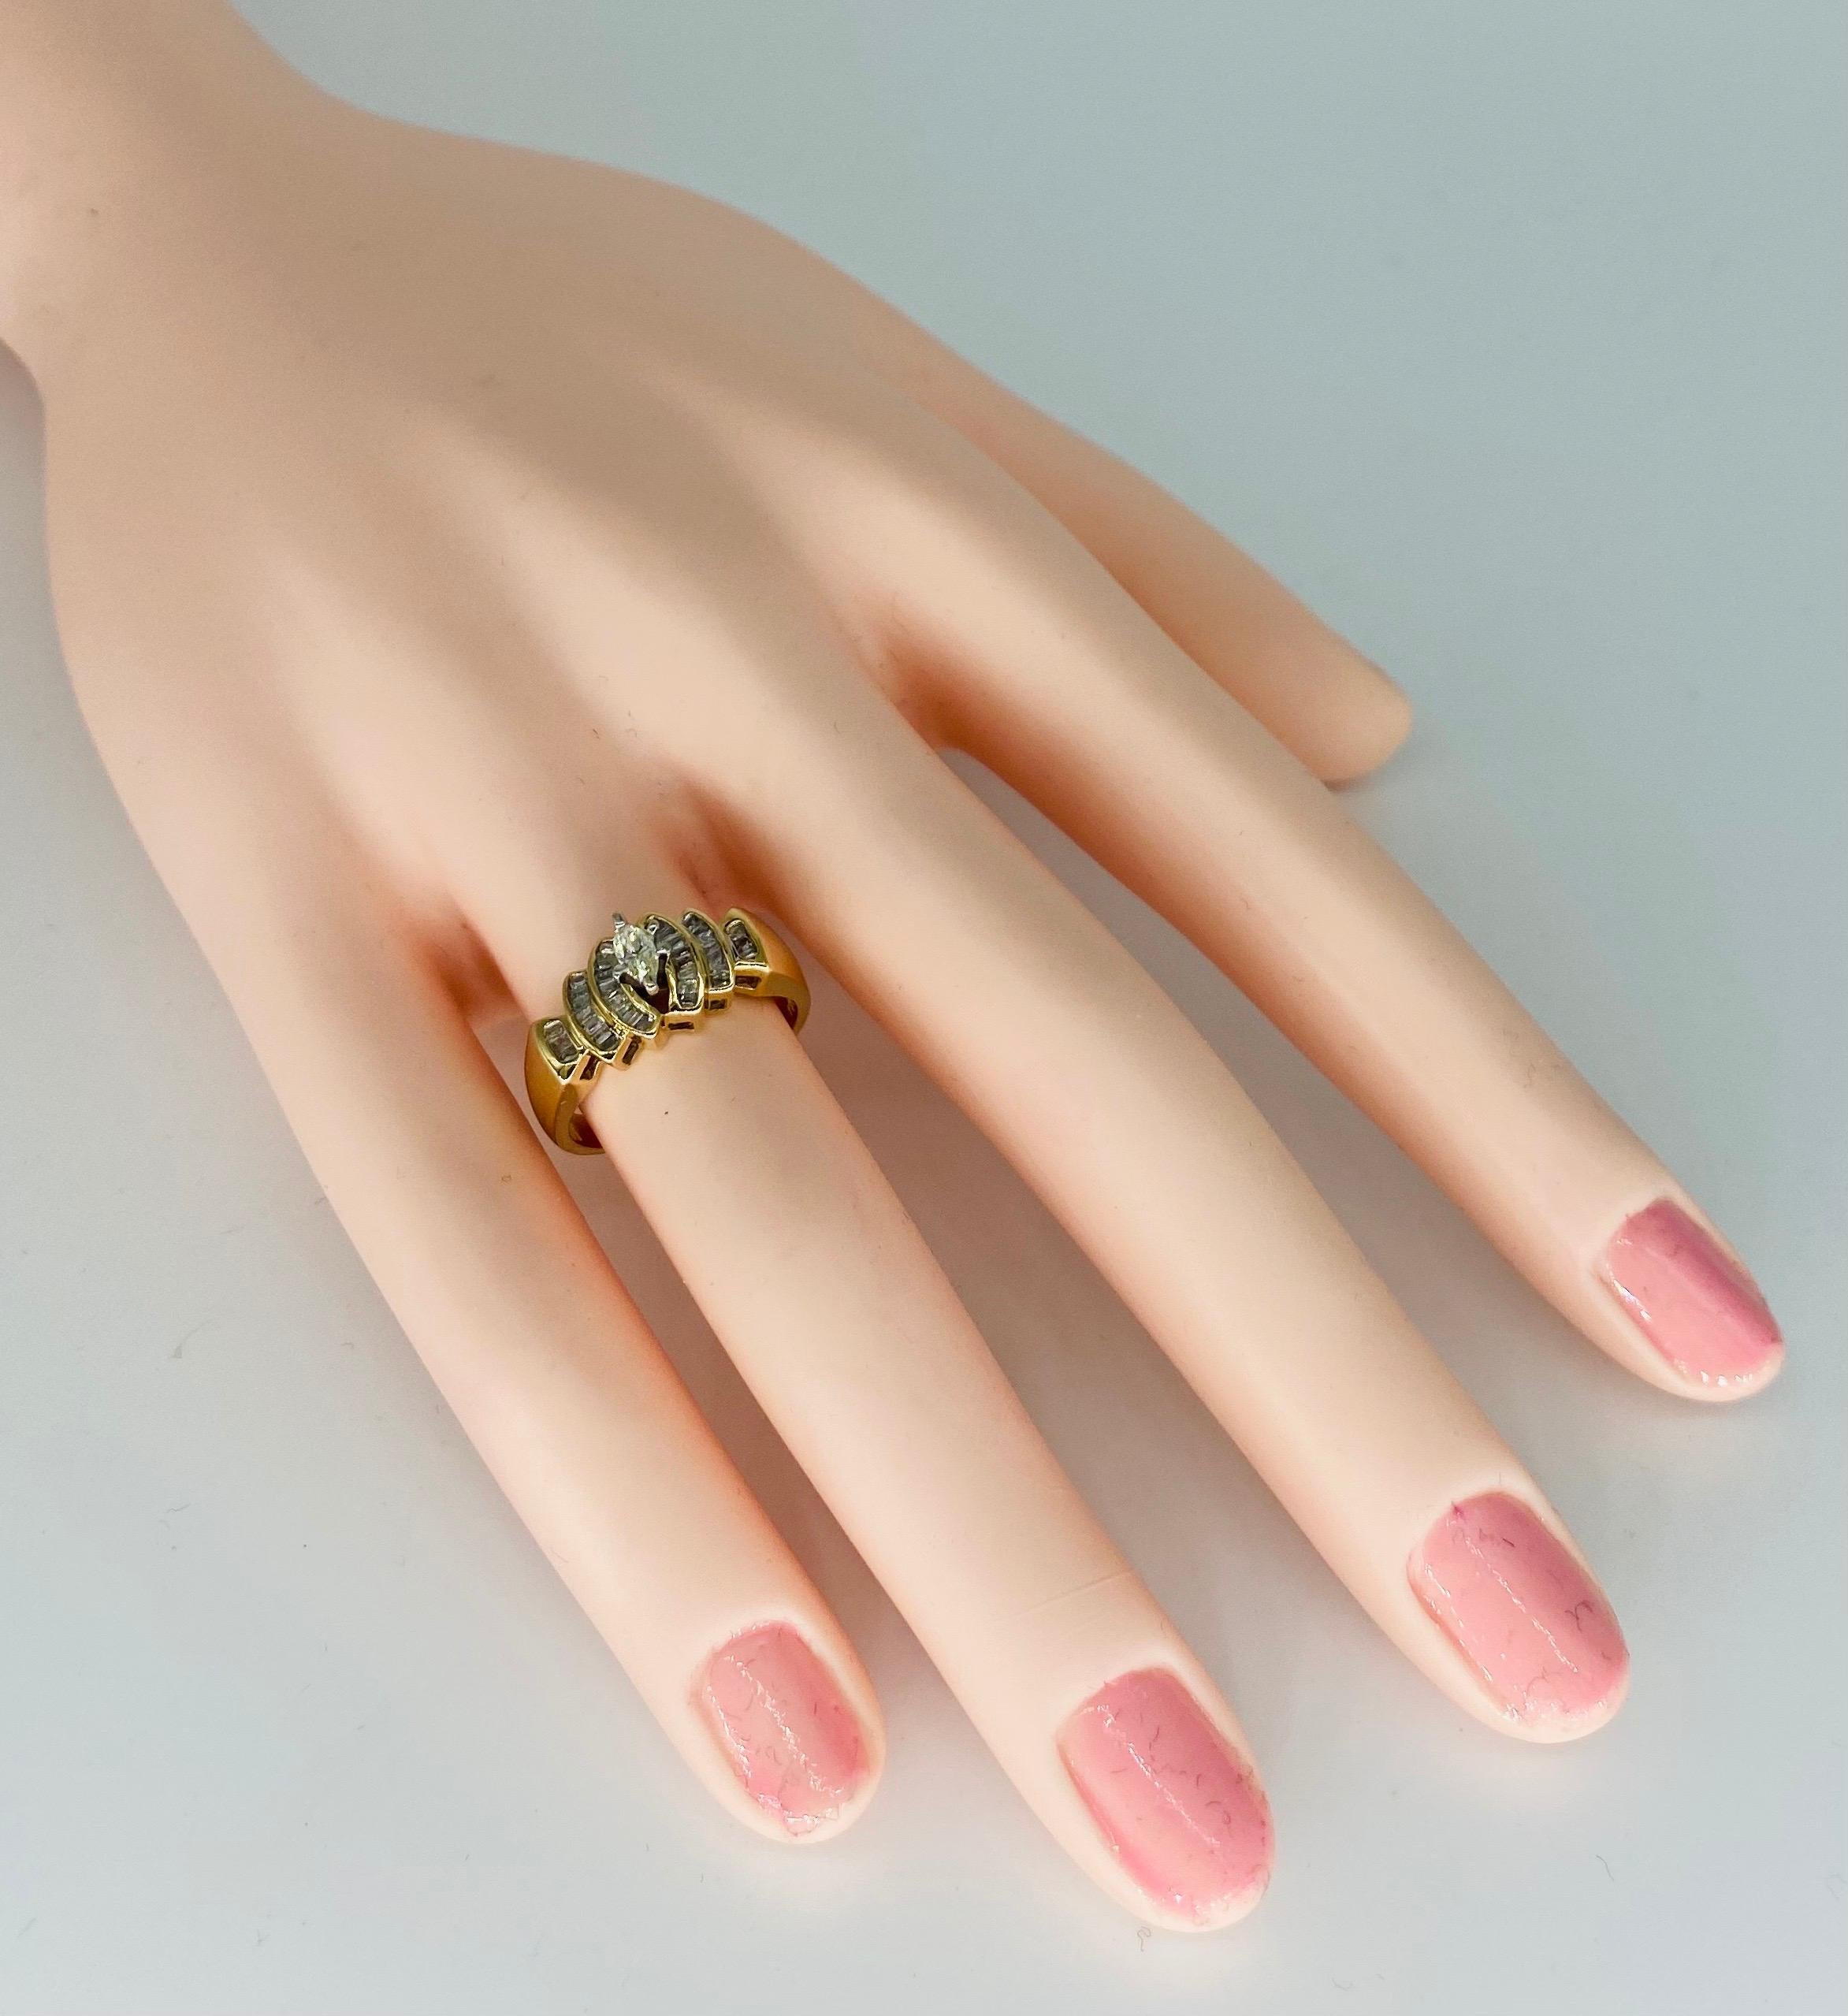 Vintage 0,50 Karat Marquise Diamant Verlobungsring. Schöner Ring mit spitz zulaufenden Diamanten im Baguetteschliff und einem Marquise-Diamanten in der Mitte, mit einem Gesamtgewicht von ca. 0,50 Karat. Der Ring ist eine Größe 6,5 und wiegt 4,2